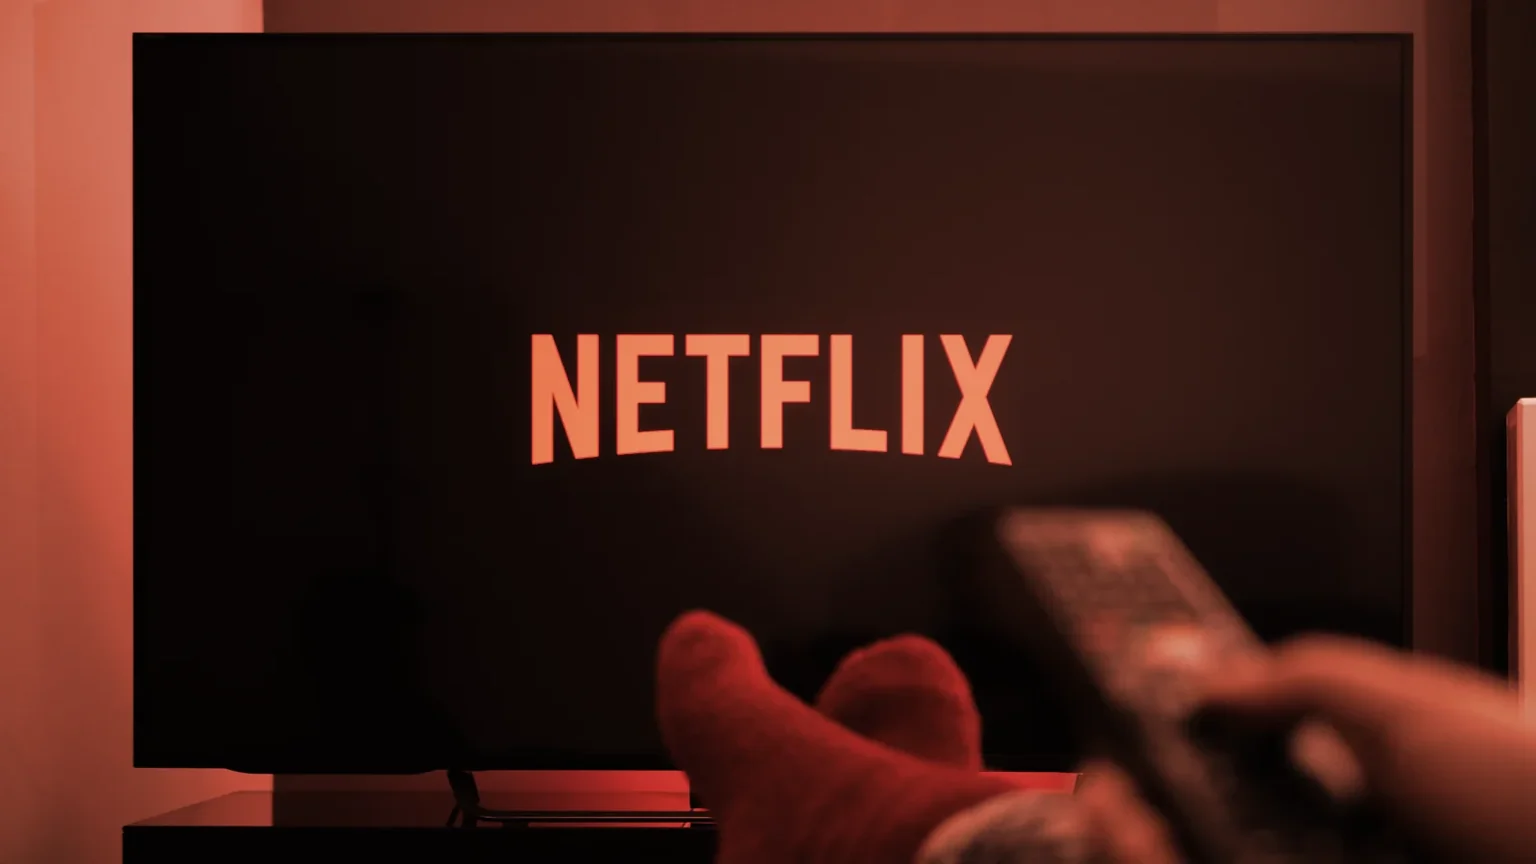 Netflix Logo. Image: Shutterstock